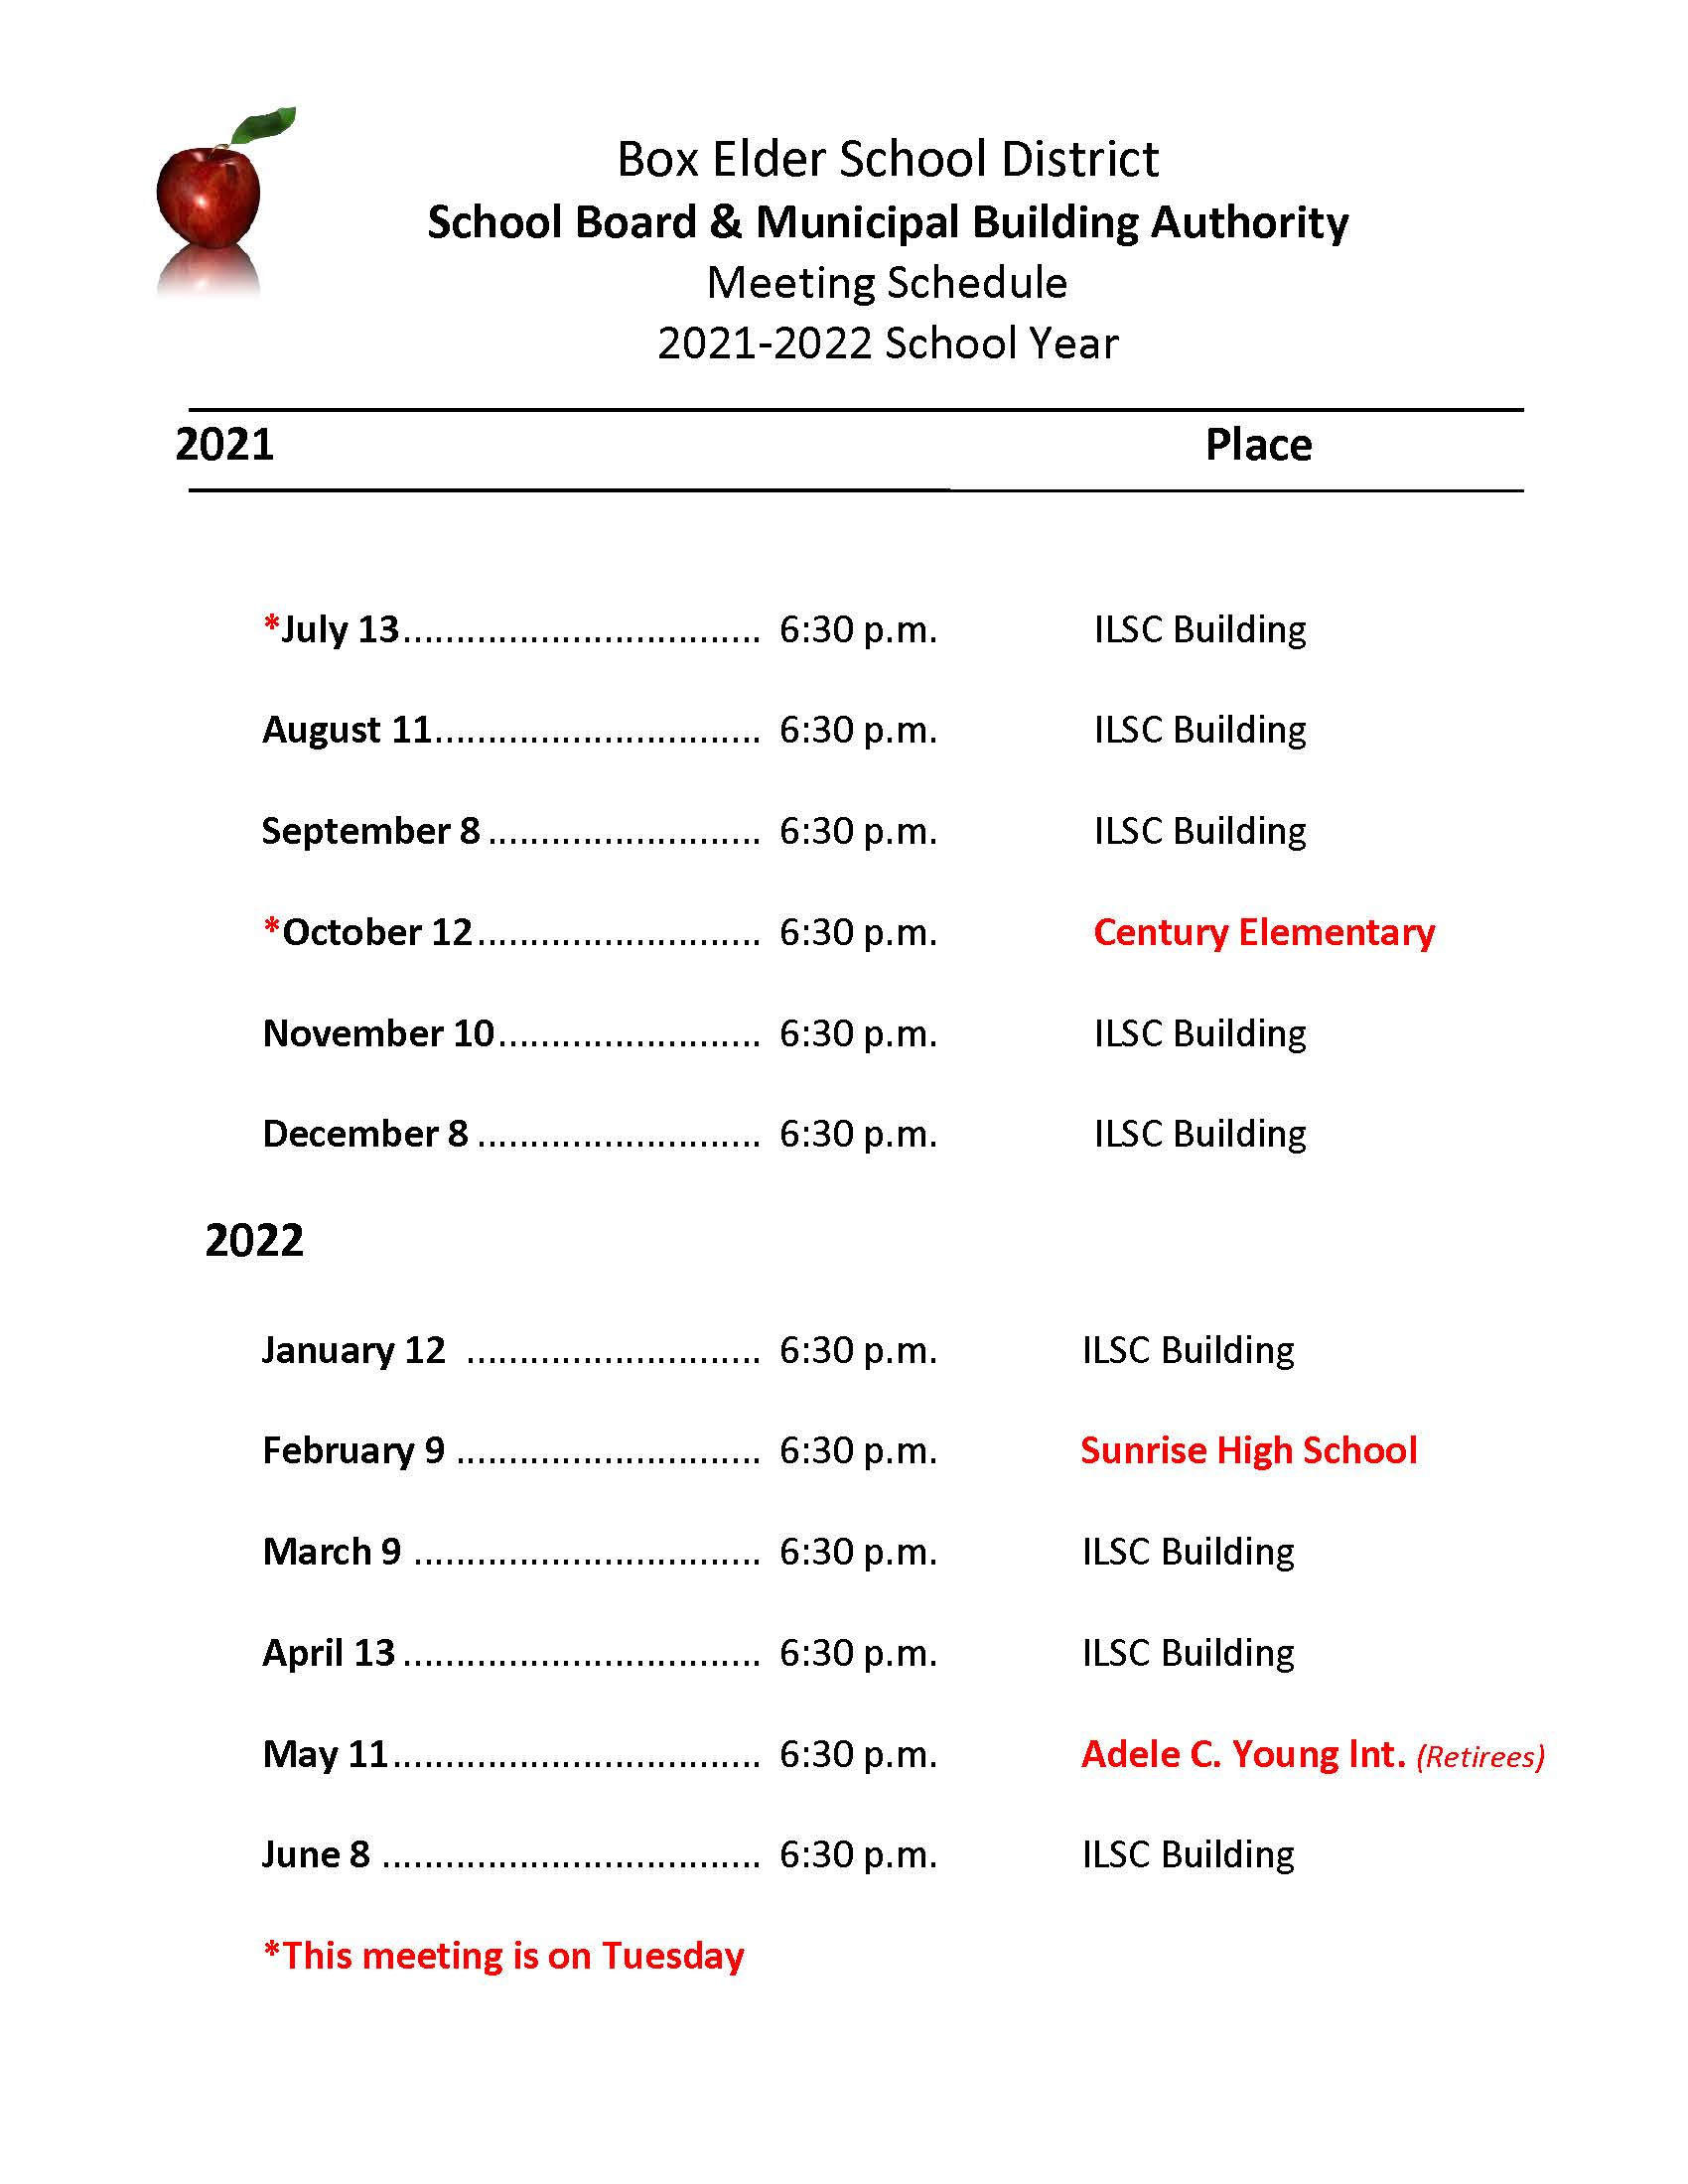 School Board Meeting Schedule | Box Elder School District